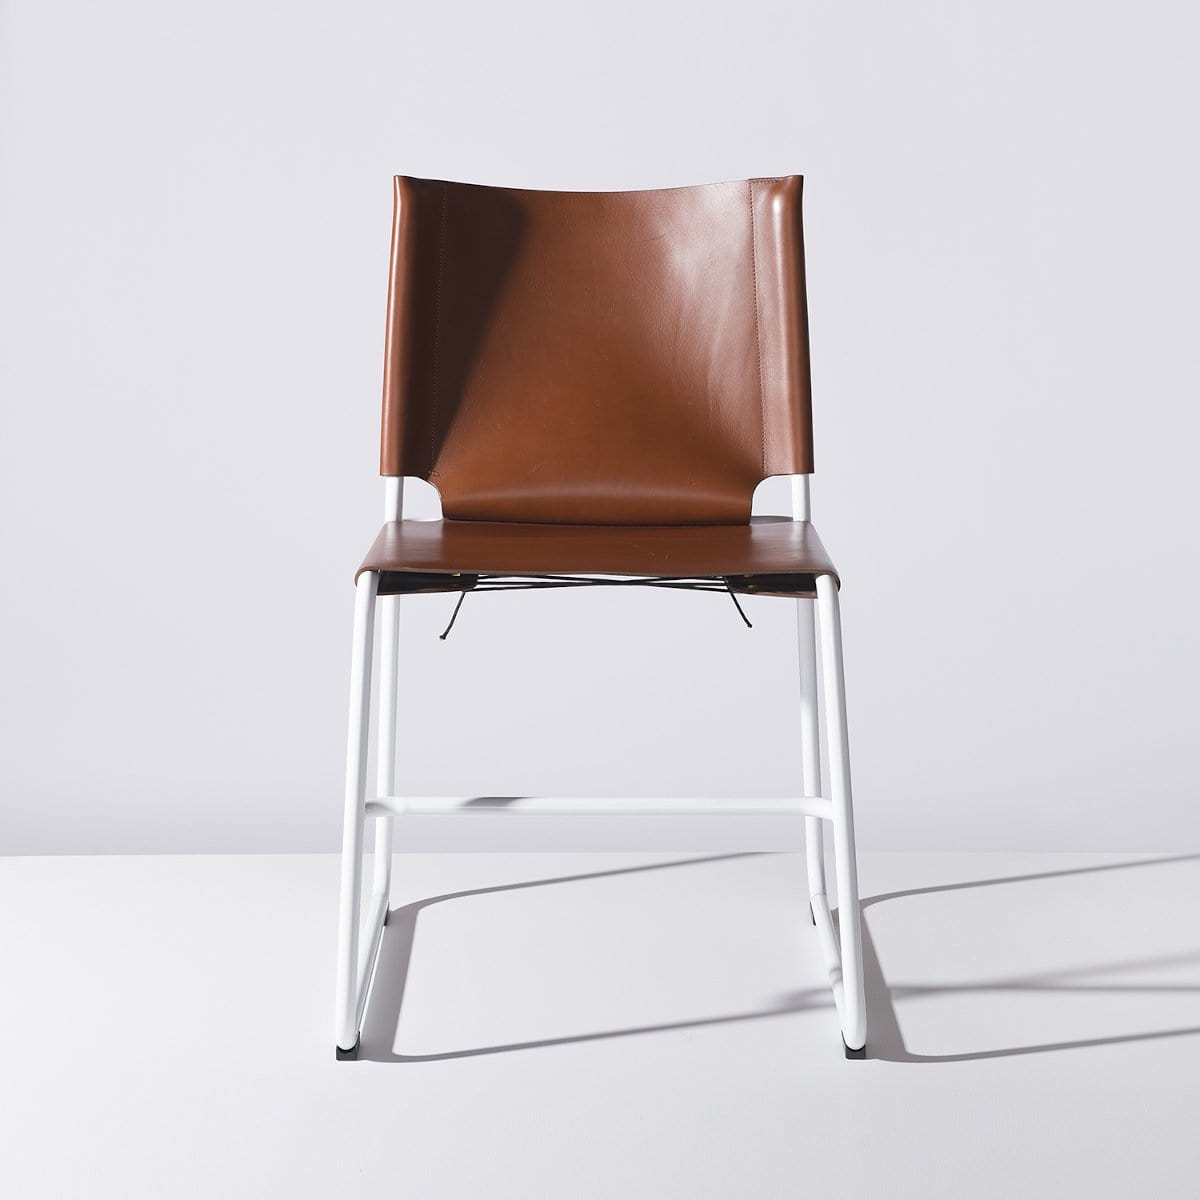 TBC2 - Chair